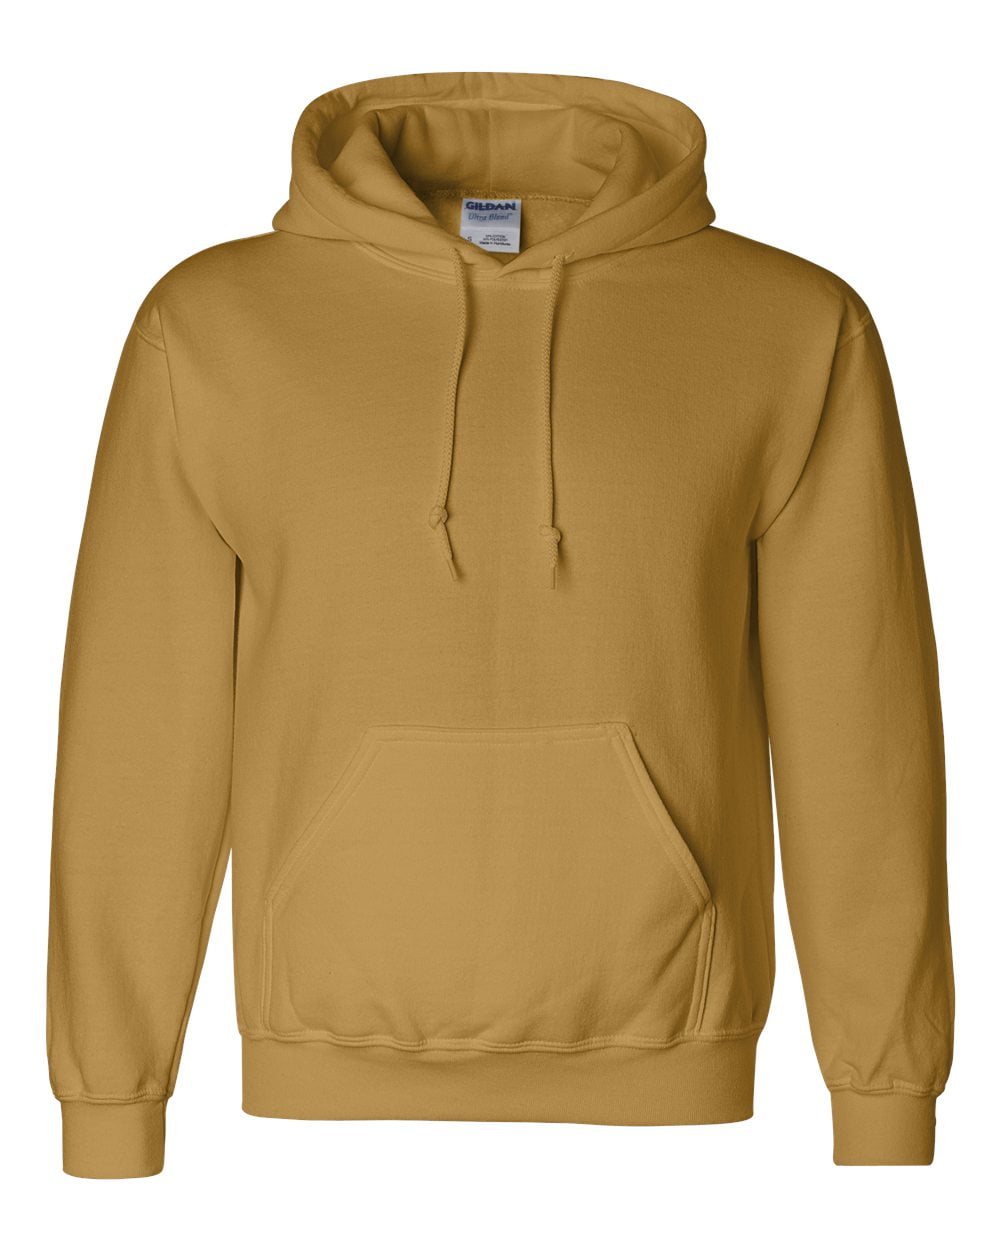 12500 Adult Hooded Sweatshirt - Old Gold - Medium - Walmart.com